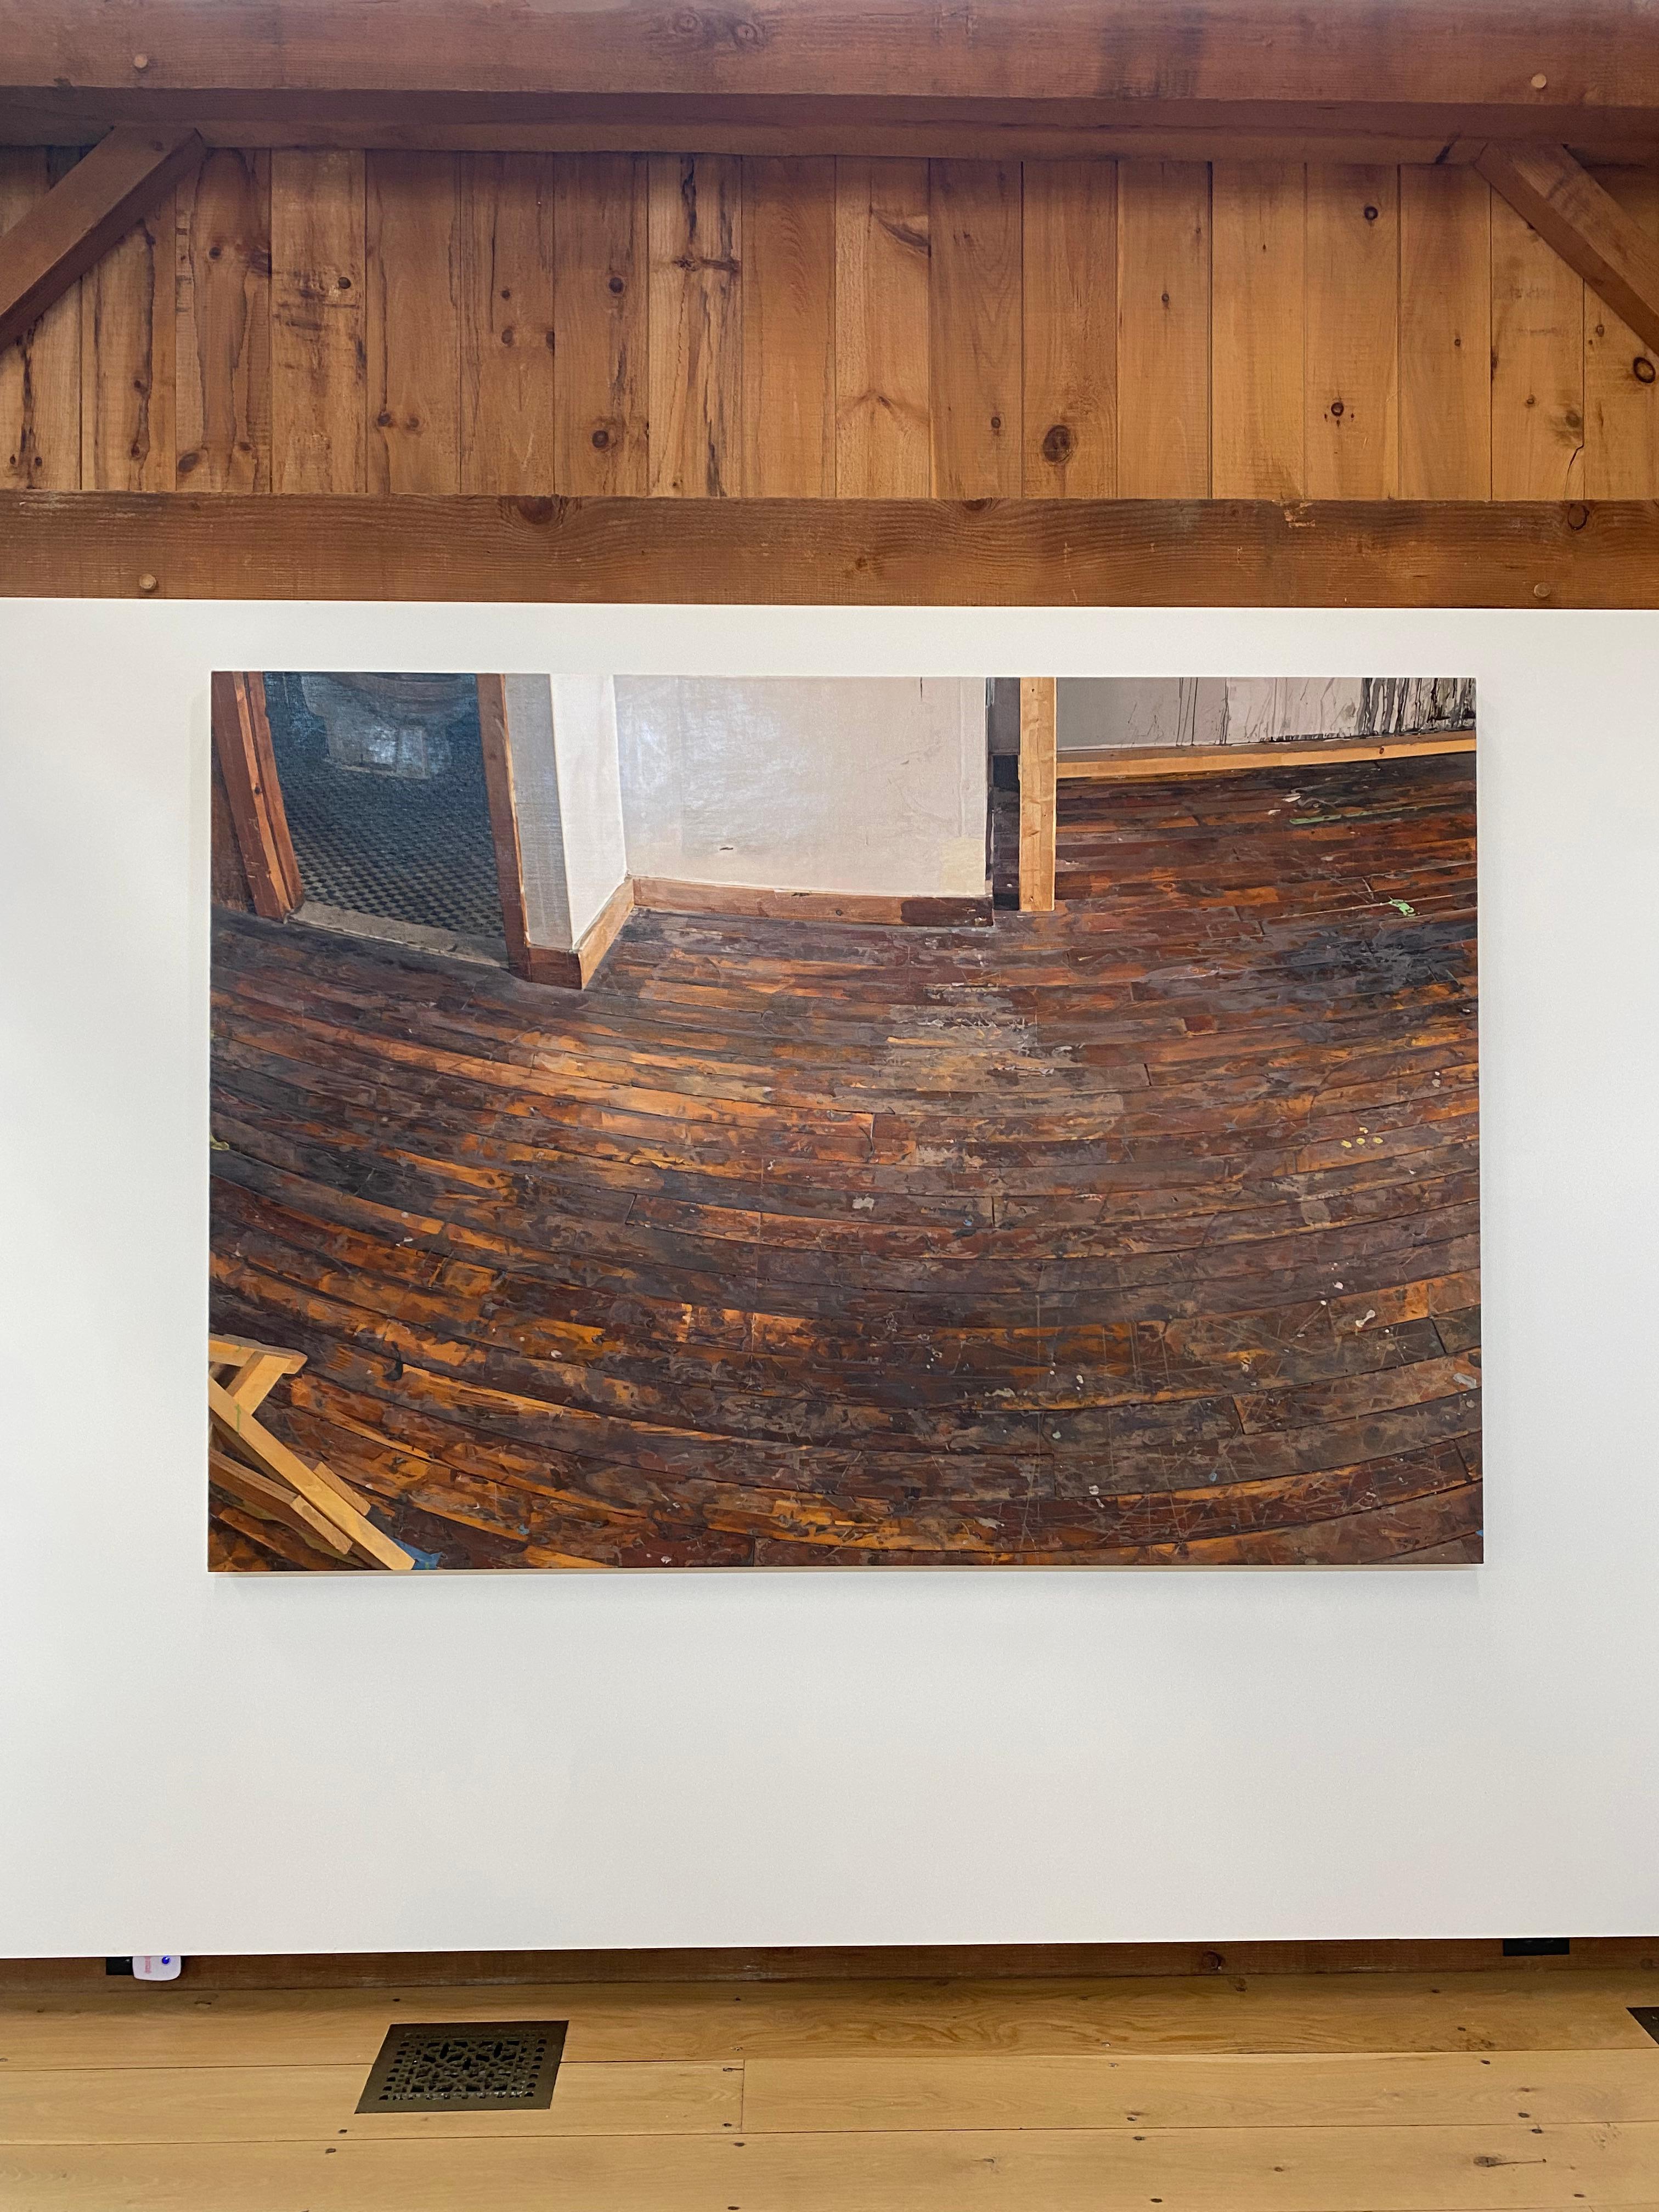 Studio Corner and Floor, Brown Wood Floor, White Walls, Art Studio Interior - Painting by Brett Eberhardt